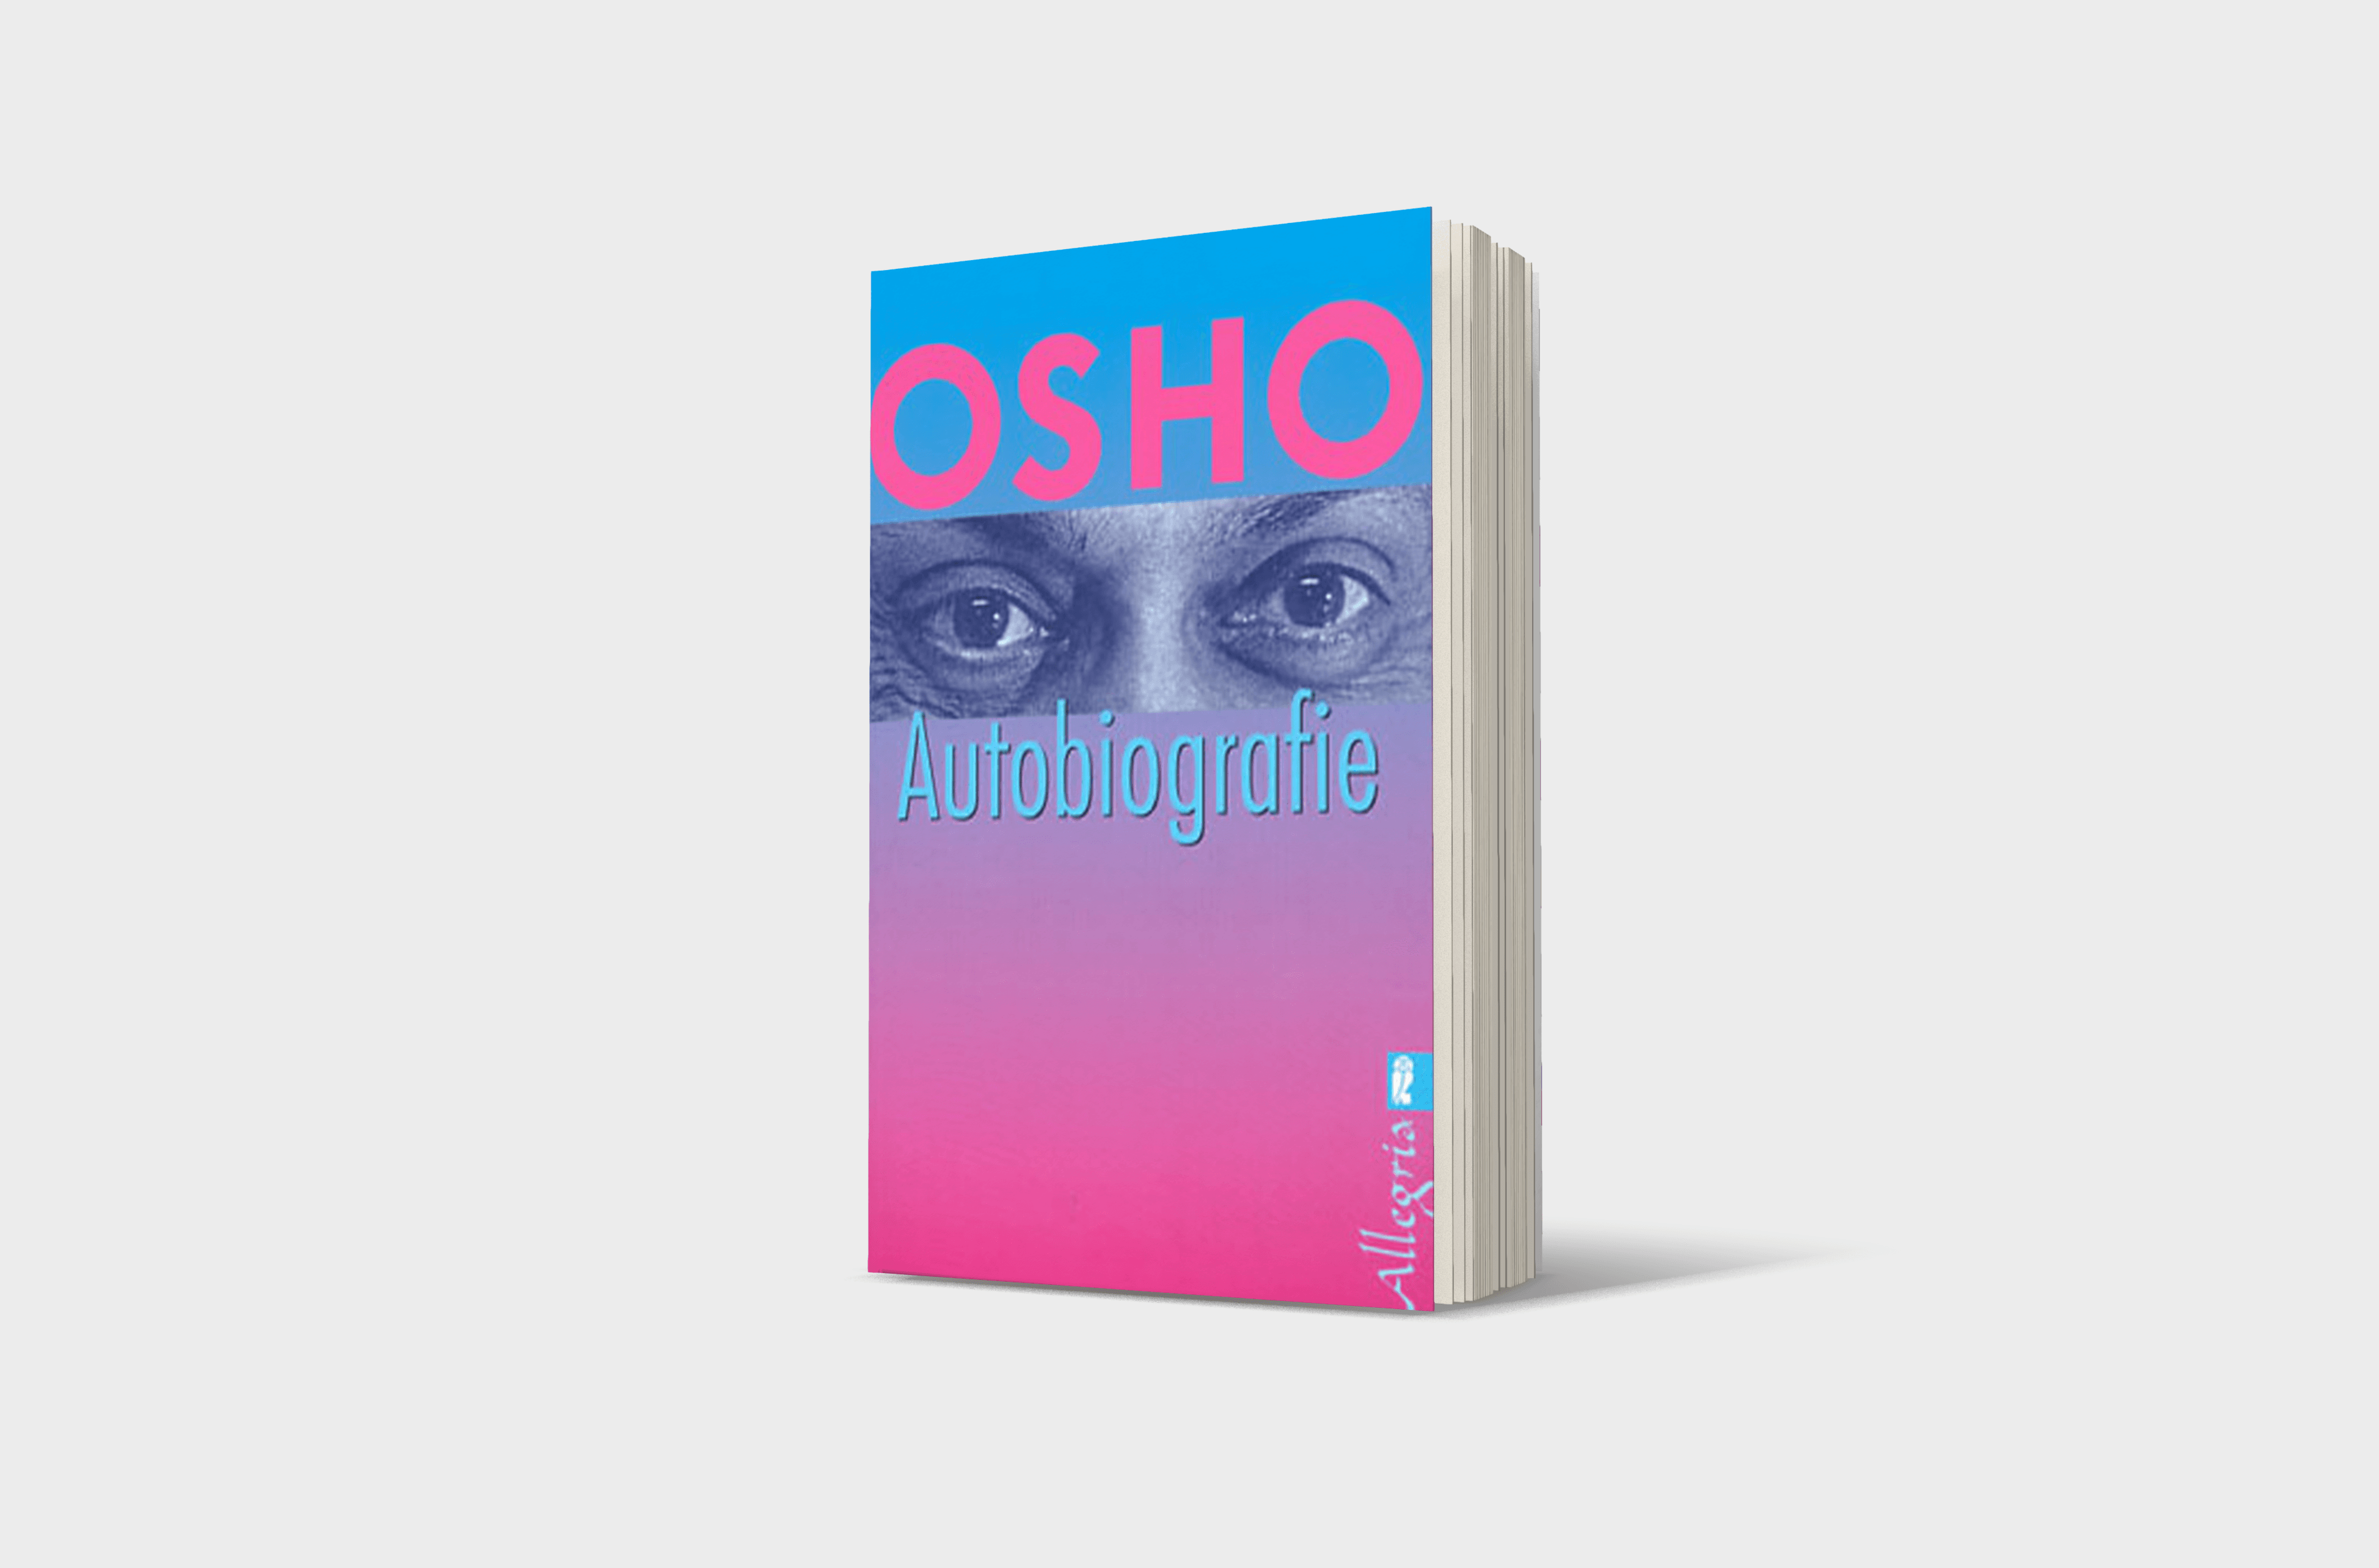 Buchcover von Osho - Autobiographie